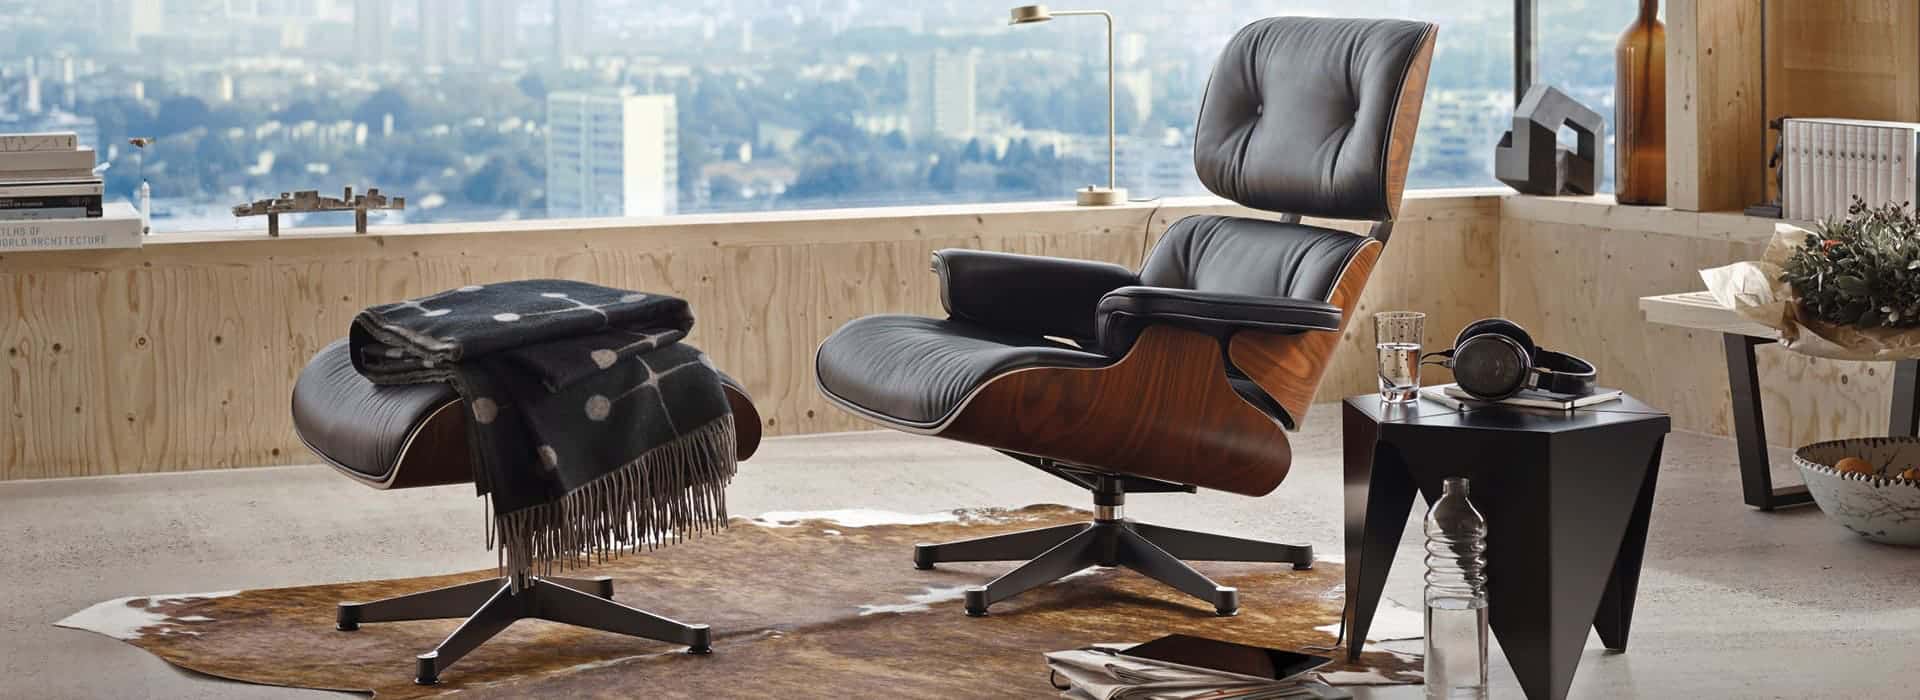 Lounge Chair von Charles und Ray Eames bei cbo im werkhaus bei Rosenheim